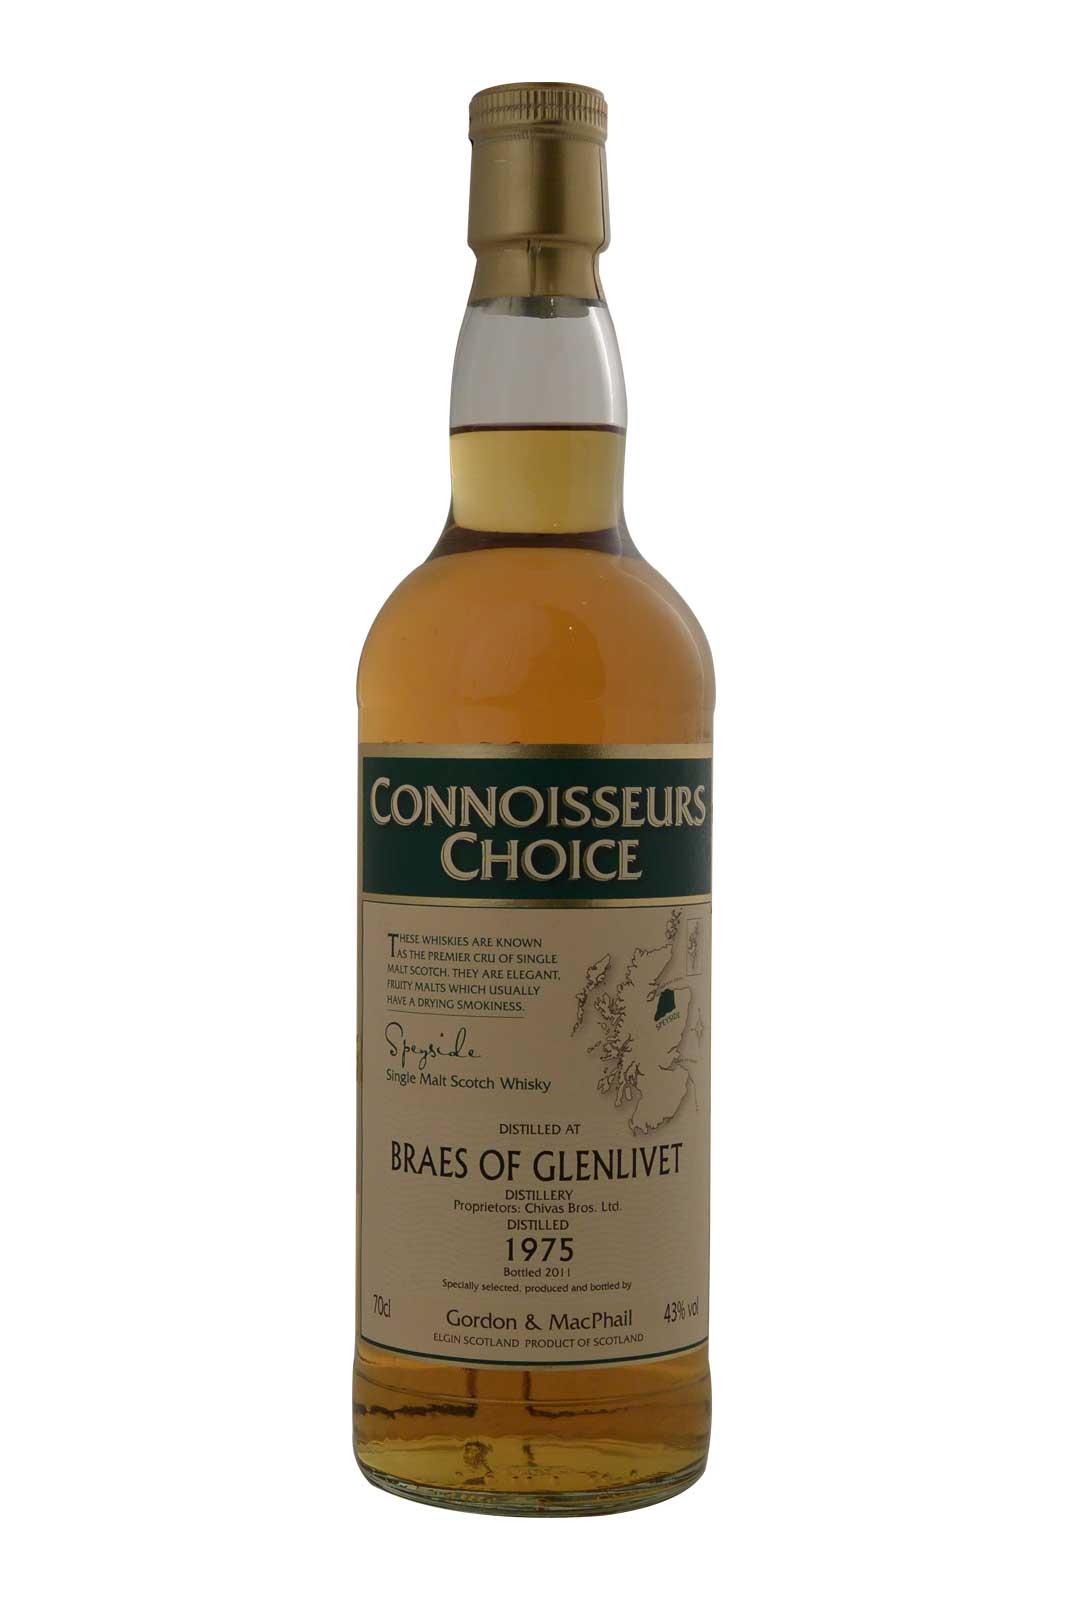 Braes of Glenlivet 1975 Gordon & MacPhail Connoisseurs Choice